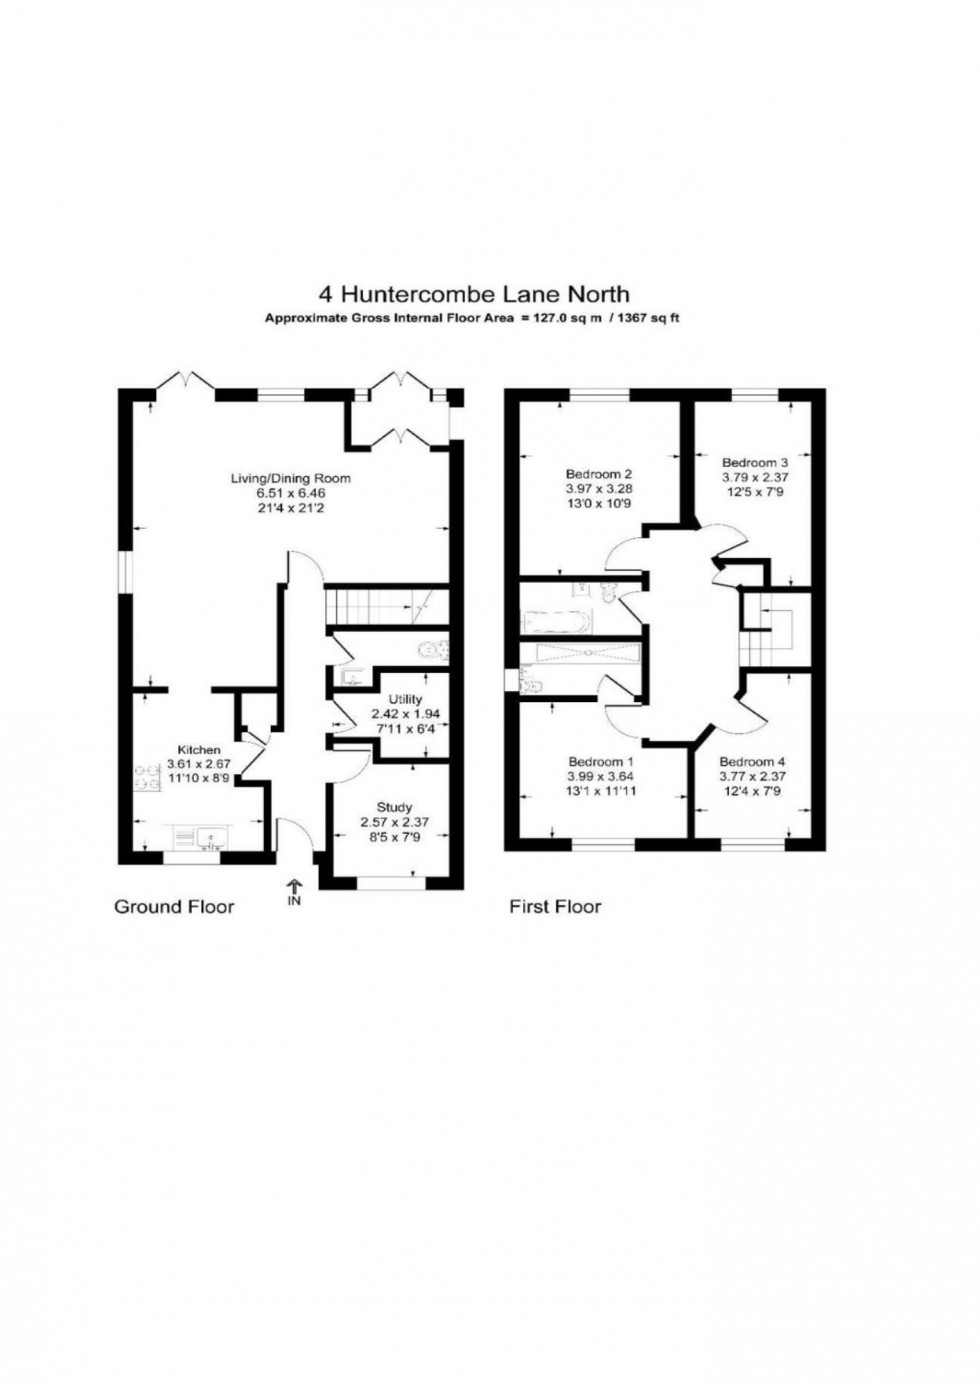 Floorplan for Huntercombe Lane North, Maidenhead, Taplow